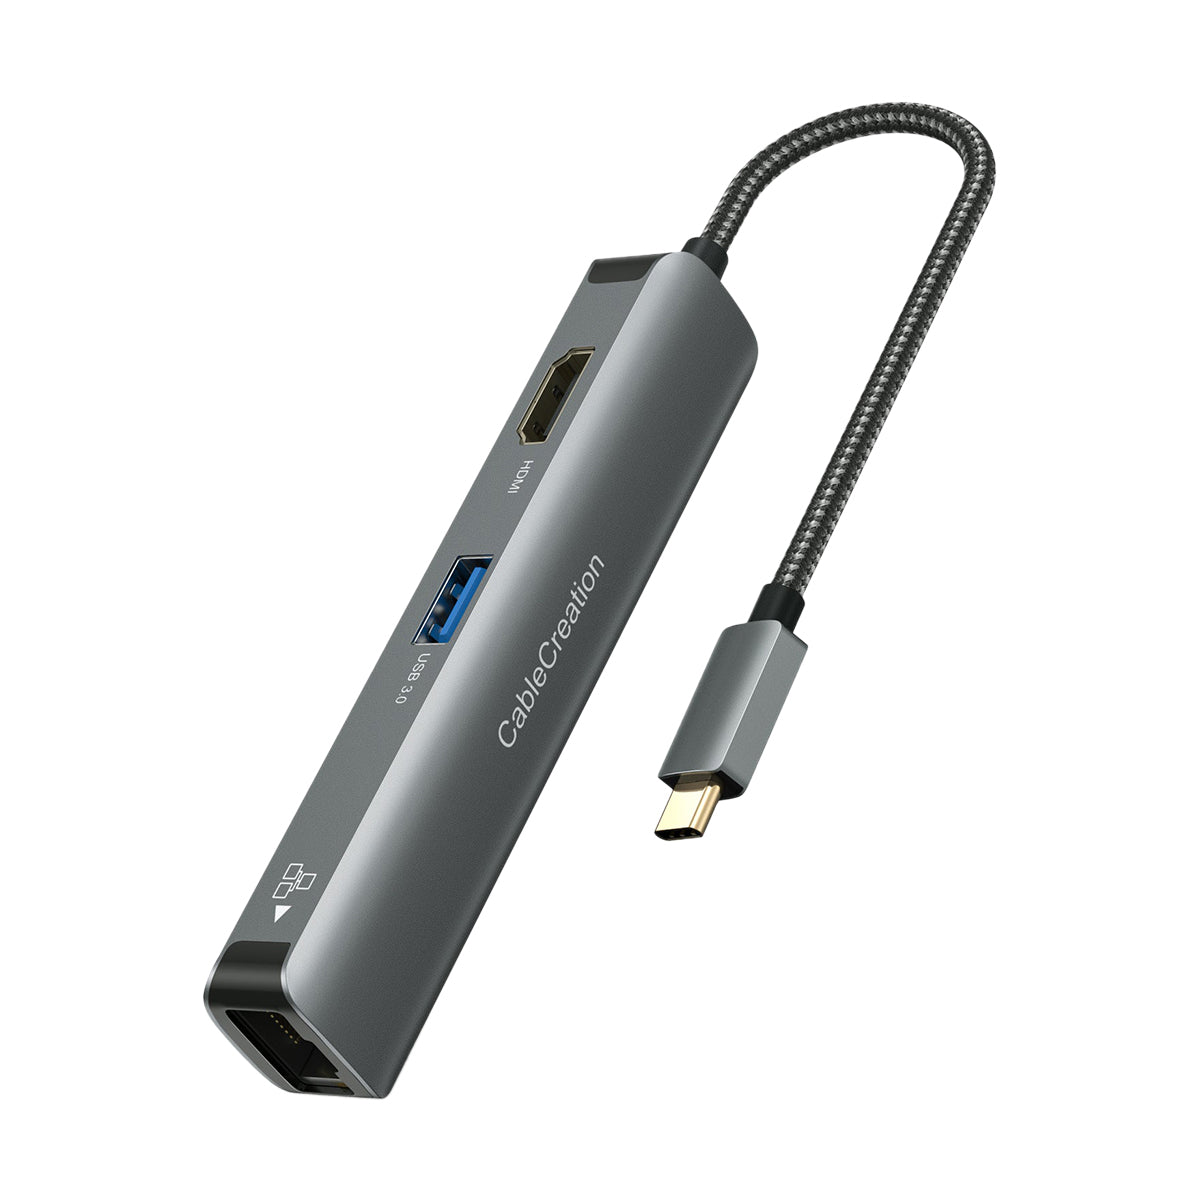 om medlem Rummet 5 in 1 USB C Hub with Ethernet & 4K HDMI | CableCreation